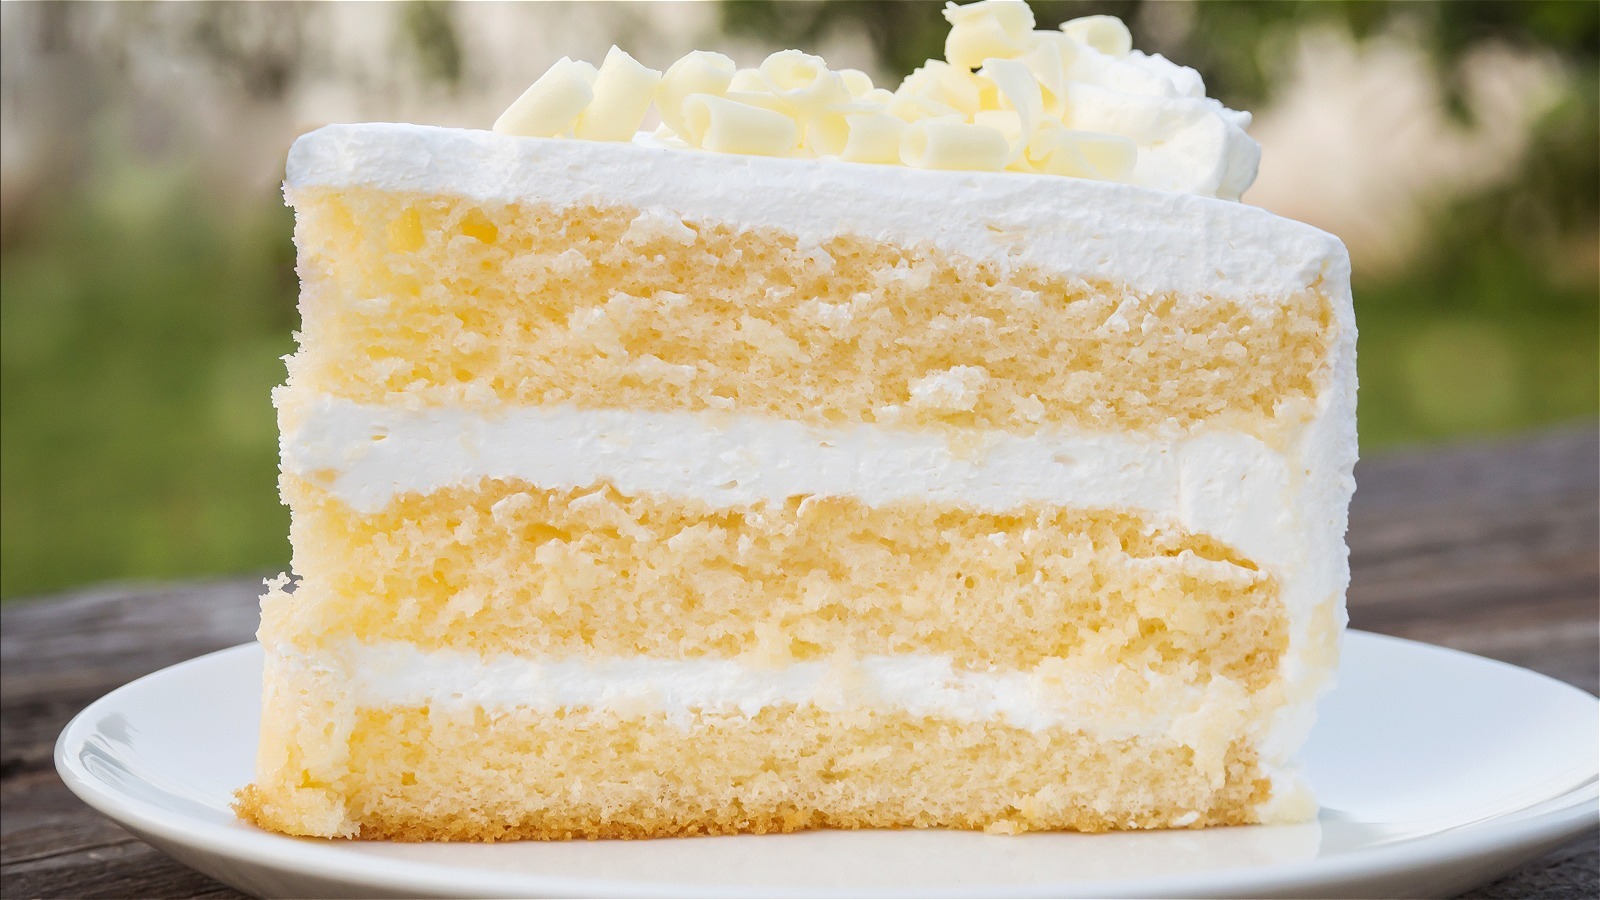 White and yellow cake | Yellow birthday cakes, 50th anniversary cakes,  Buttercream cake decorating